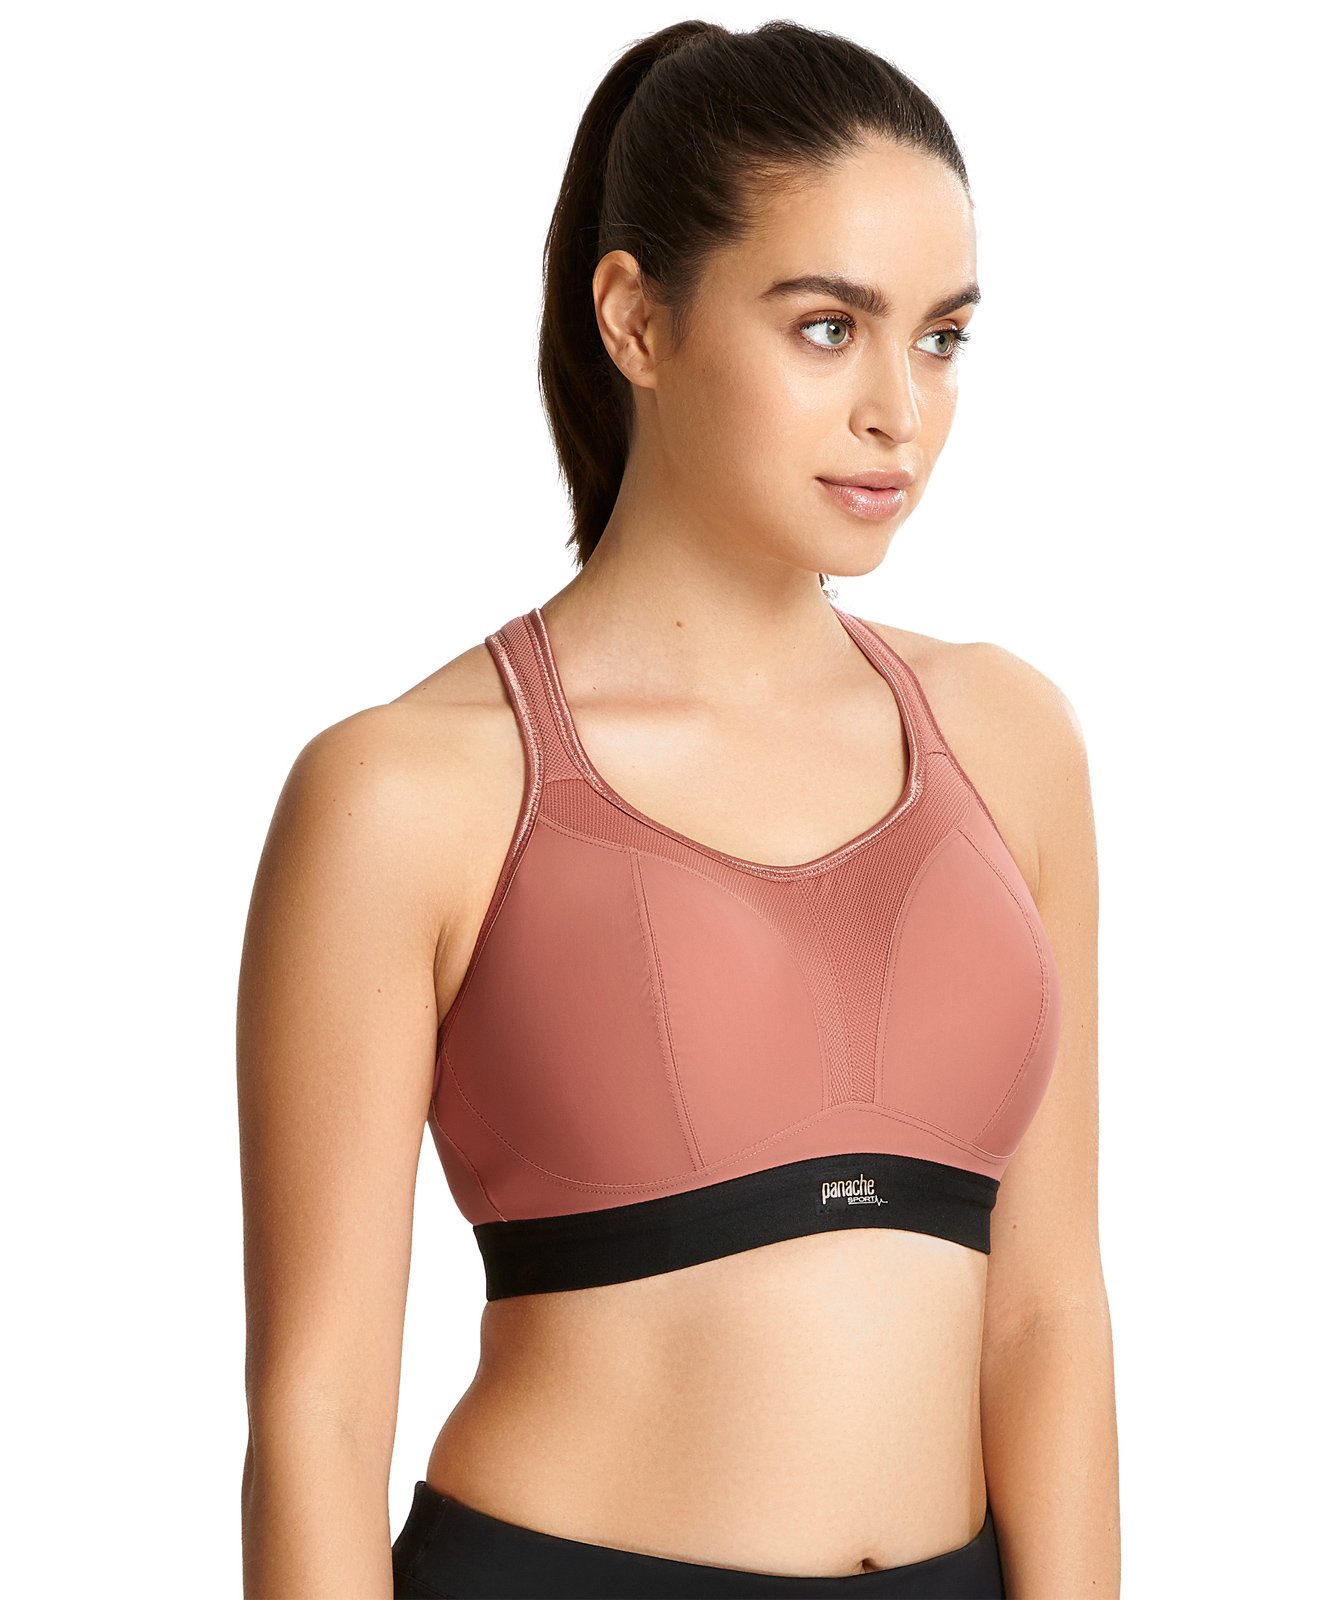 Panache Non-wired Sports bra (Rose/Black) by Panache - Non-Underwired bras